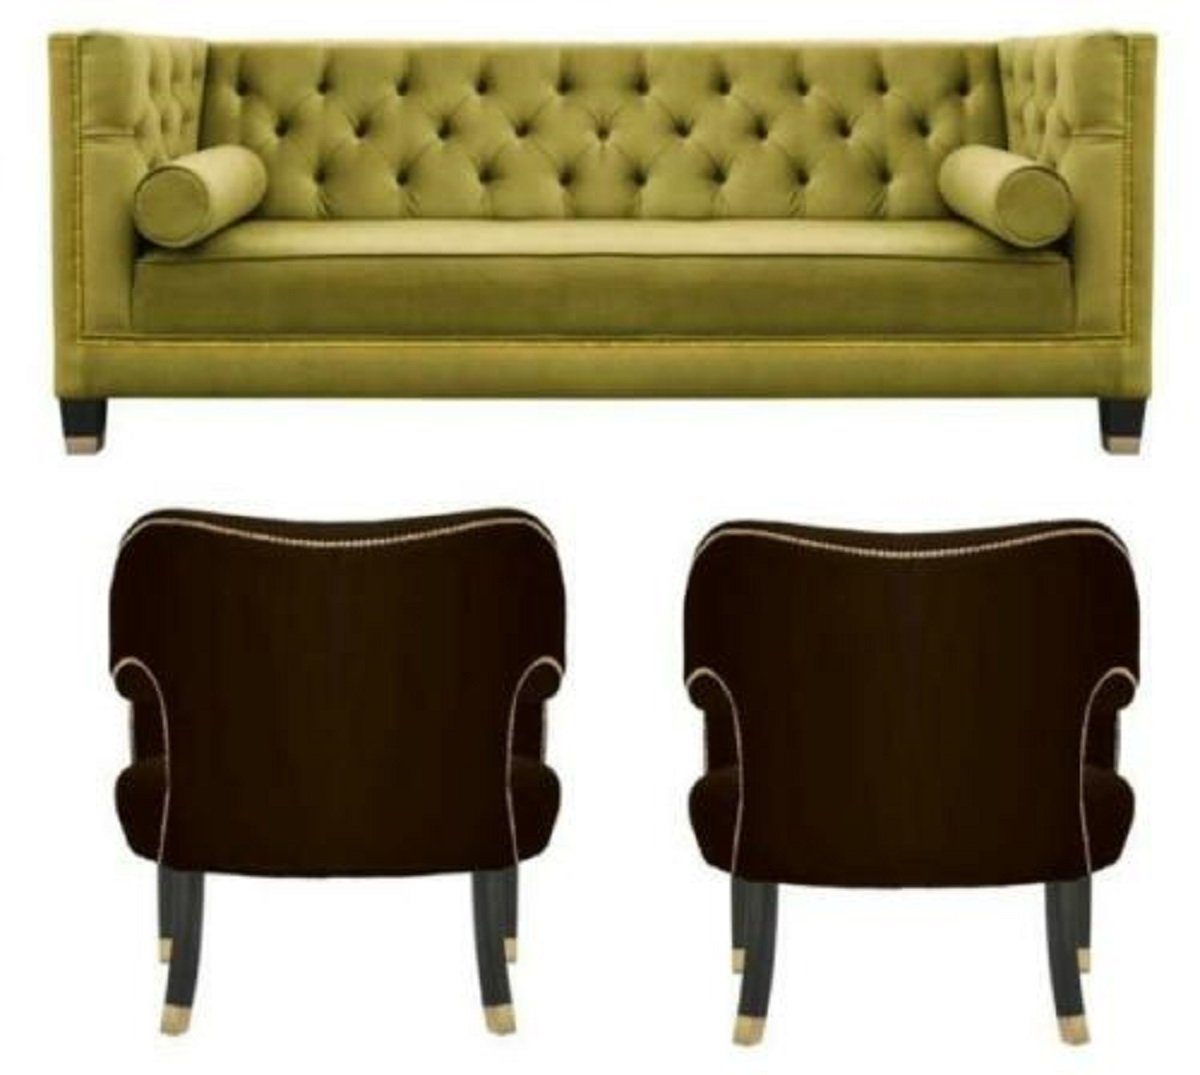 JVmoebel Sofa Sofagarnitur Gelbe Chesterfield Couch Samt Sofa Einsitzer 3tlg., Made in Europe